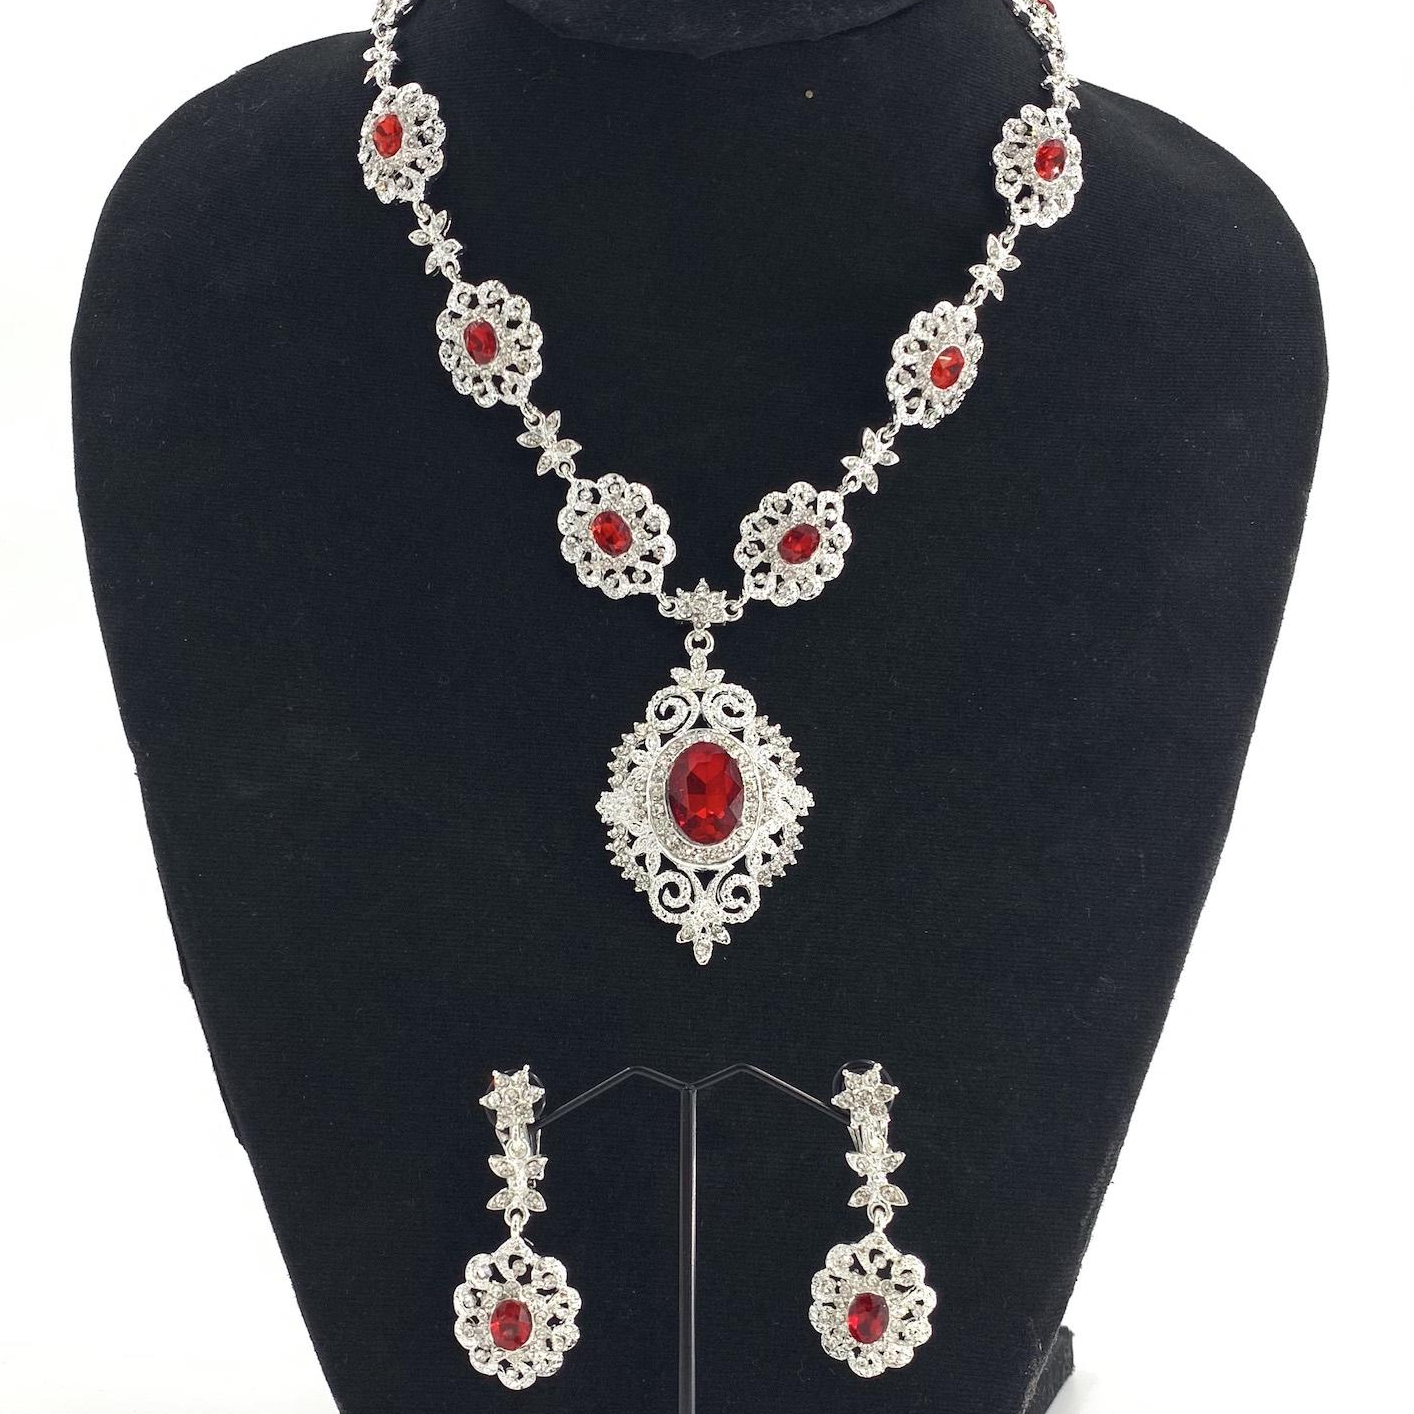 Vintage jewelry ชุดไทย สร้อยคอ ต่างหูคลิป สีสี เครื่องประโบราณ เจ้าสาว